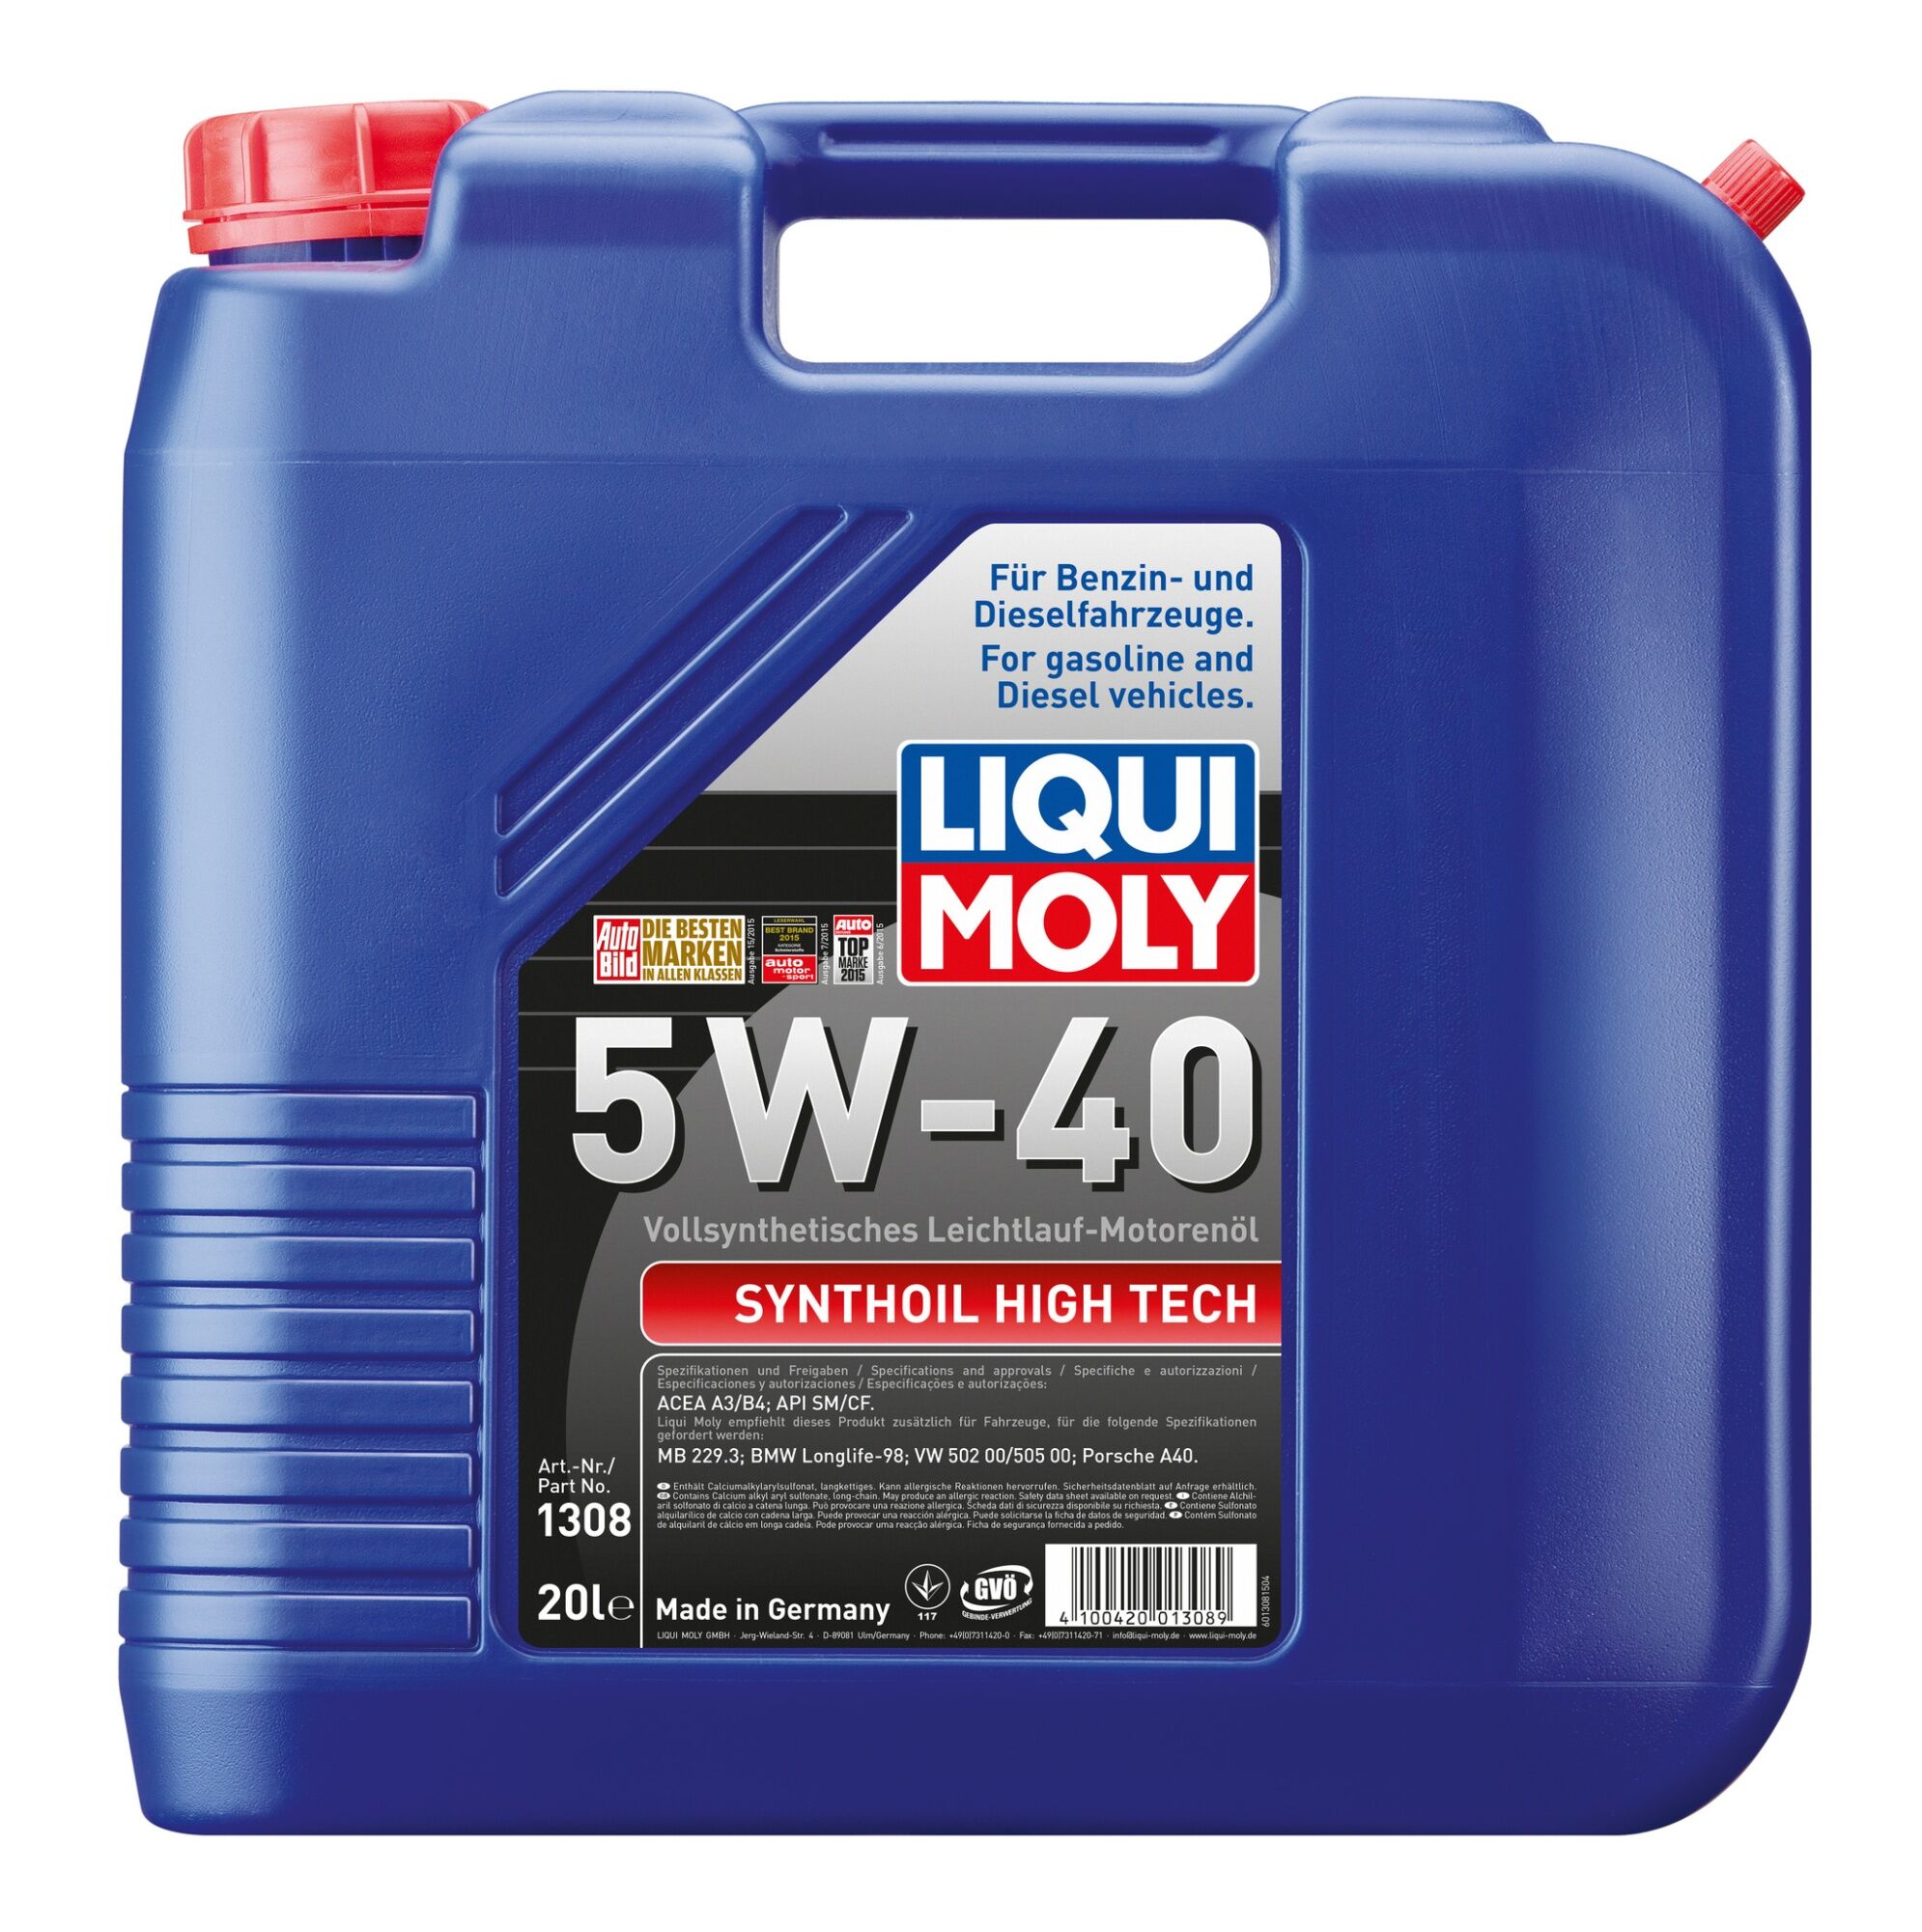 Моторное масло LIQUI MOLY Synthoil High Tech 5W-40 синтетическое 20л (1308)